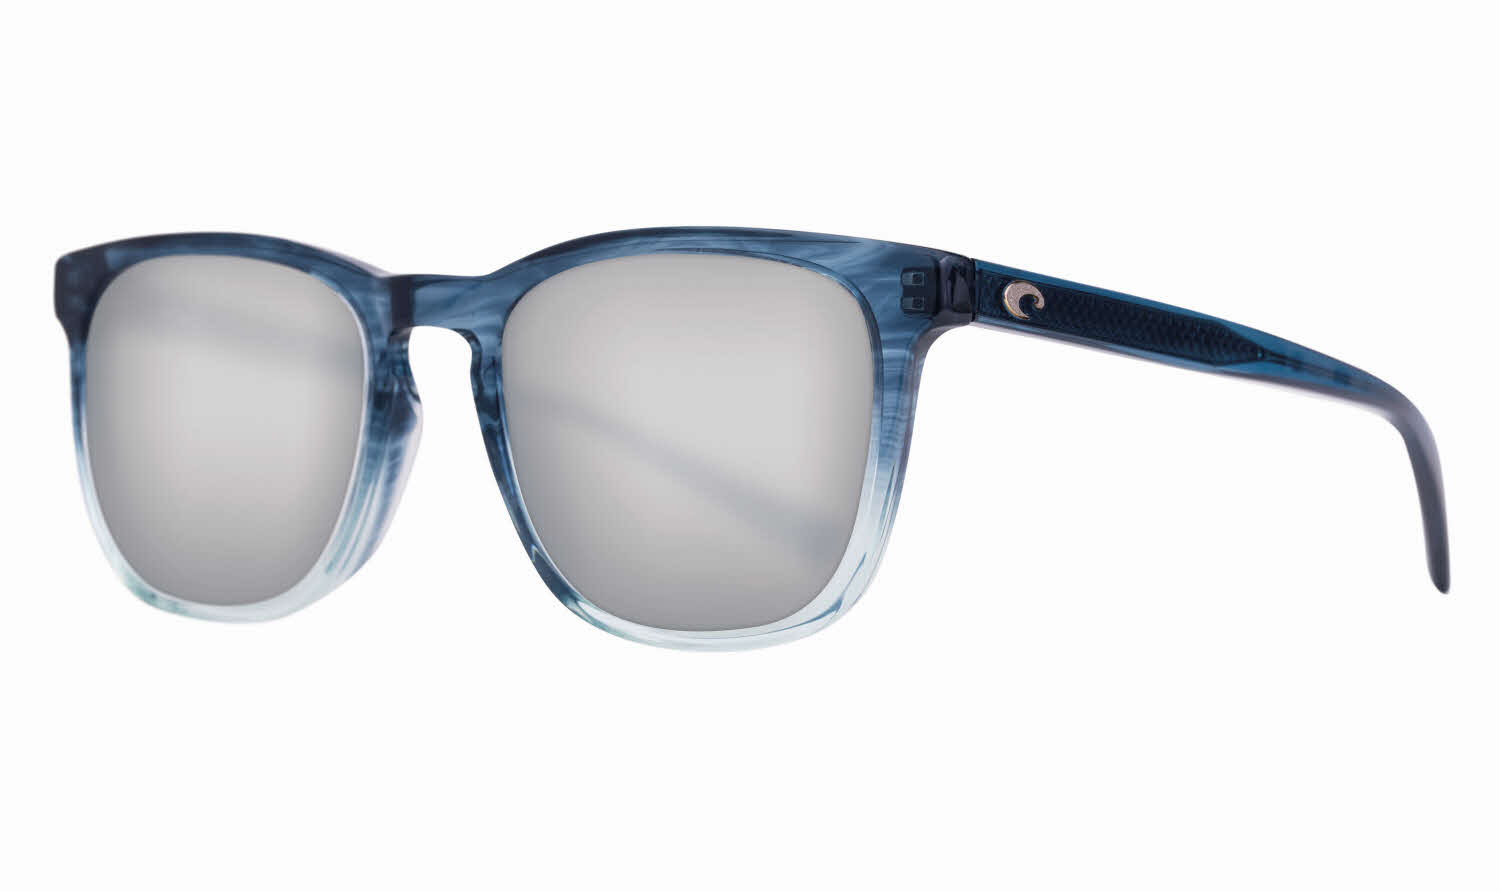 Costa Sullivan - Del Mar Collection Sunglasses In Blue